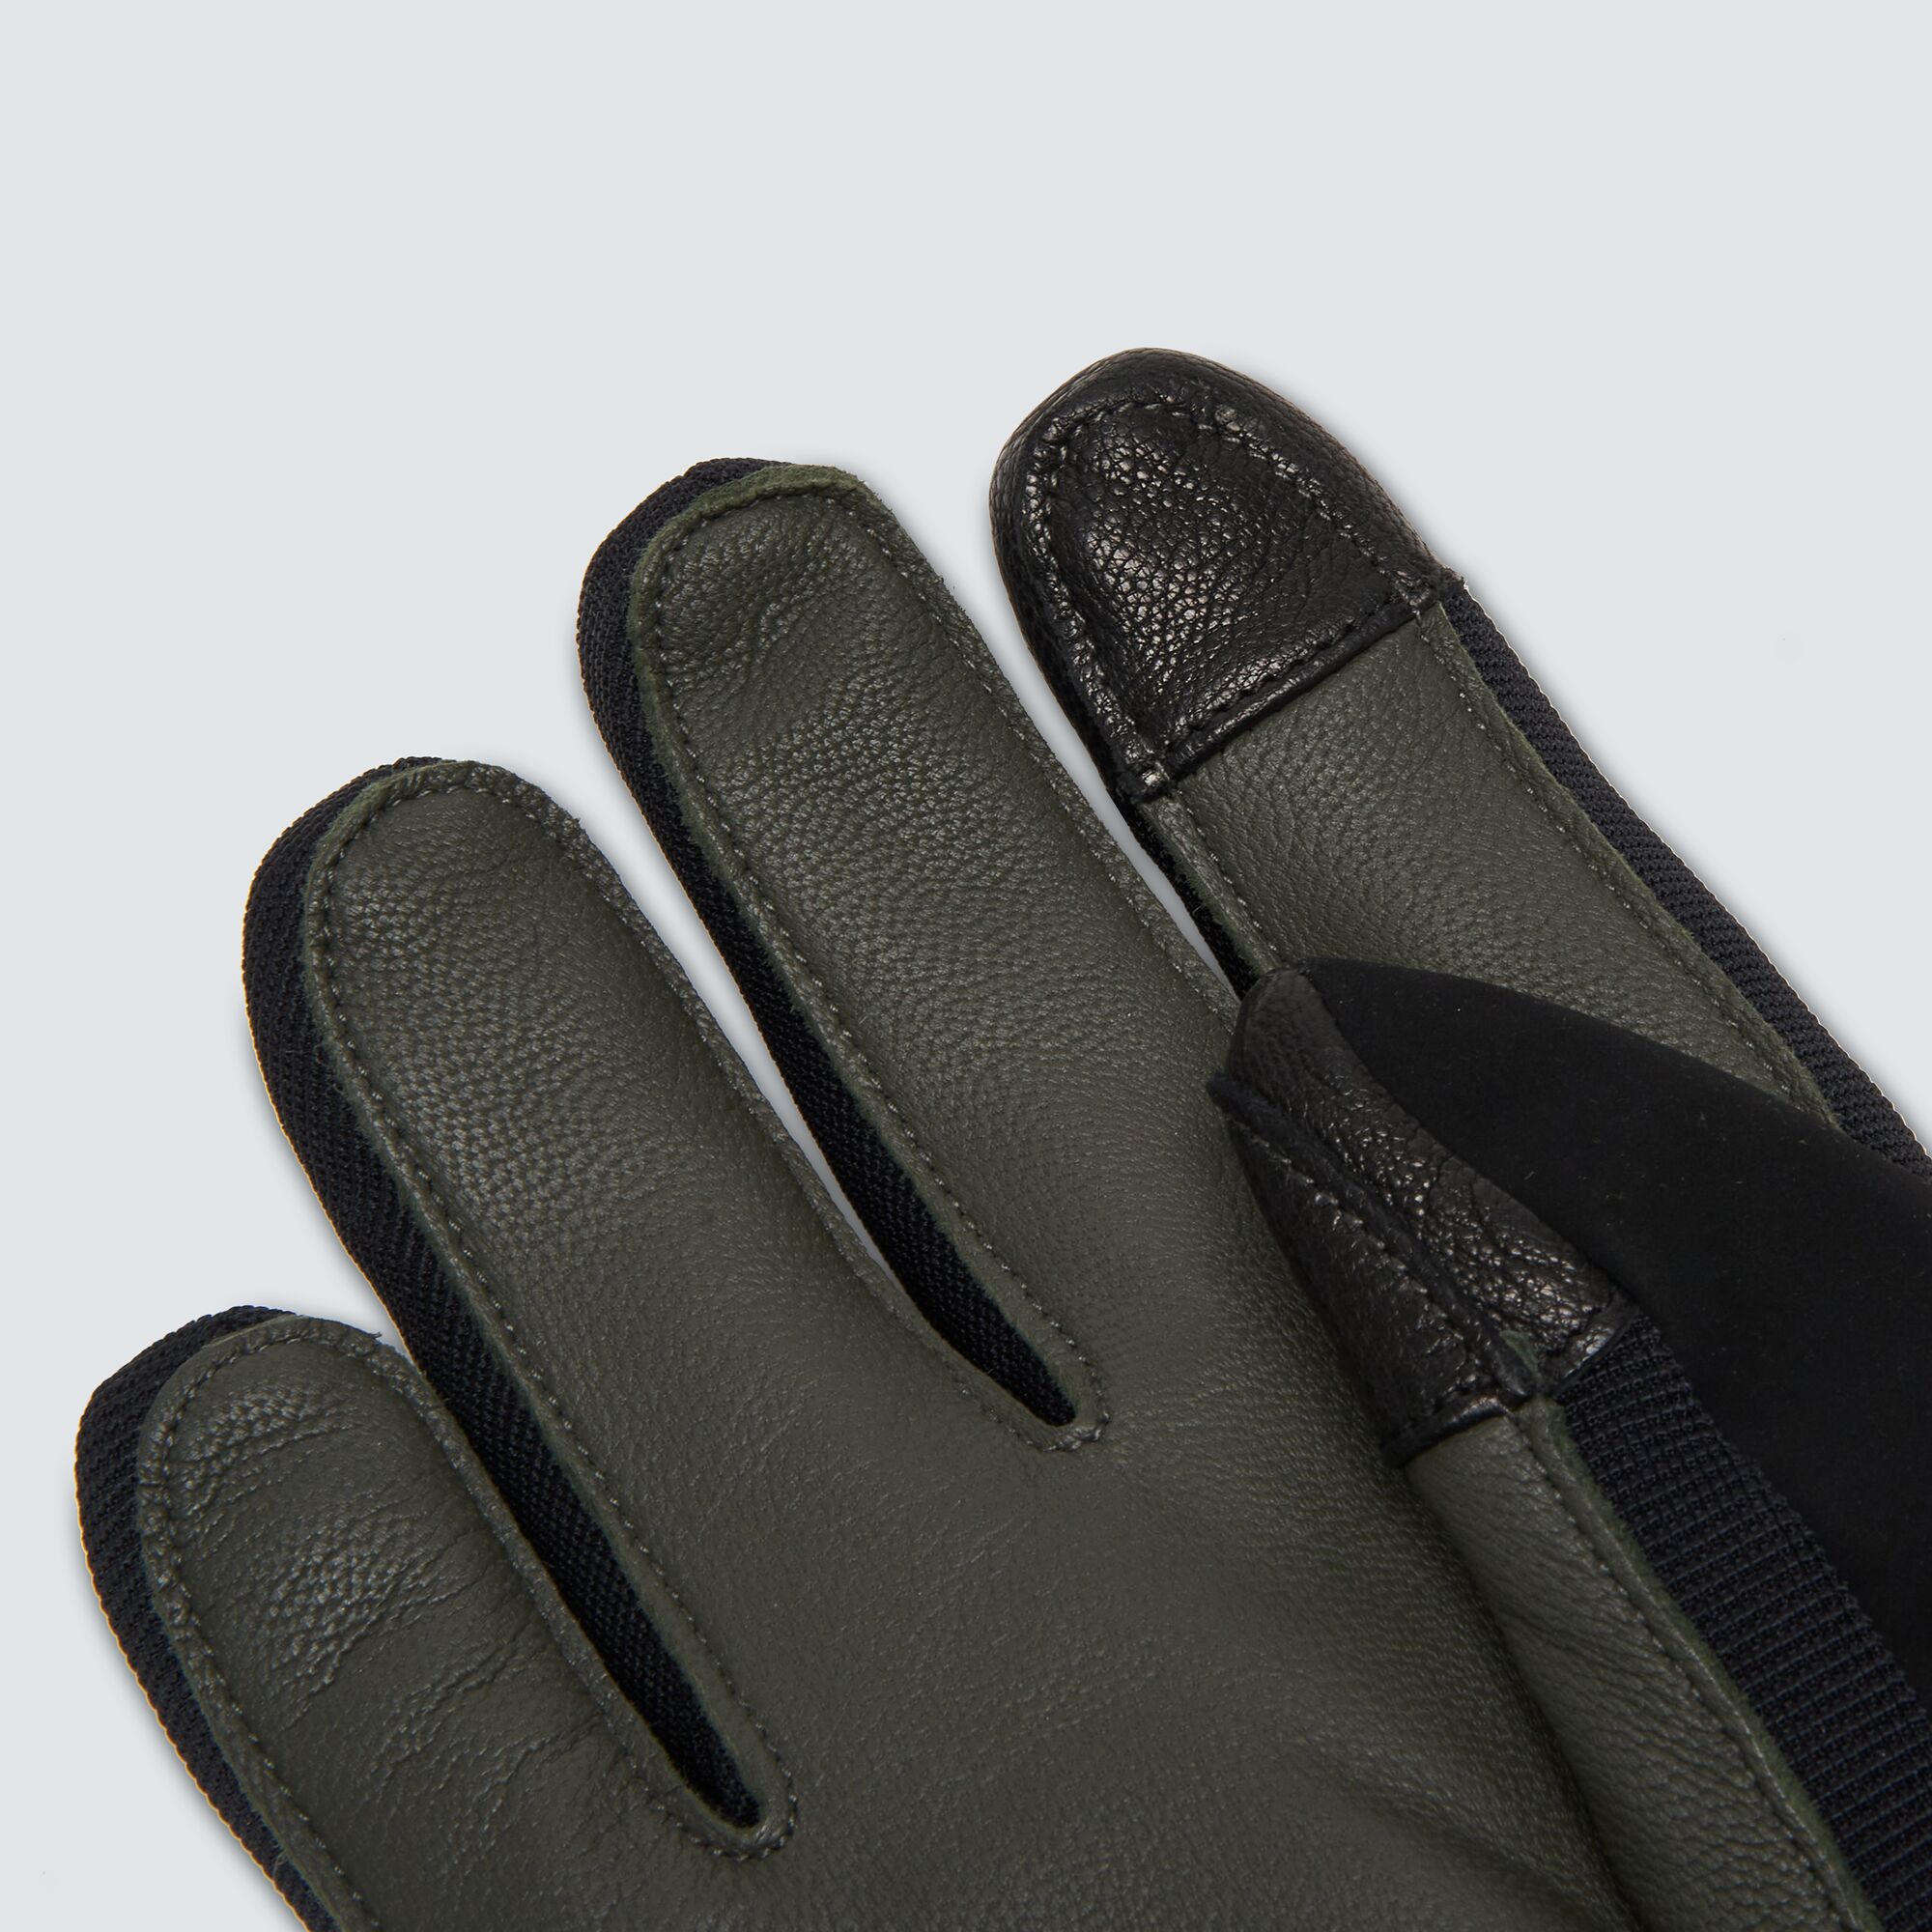 Oakley Factory Winter Glove 2